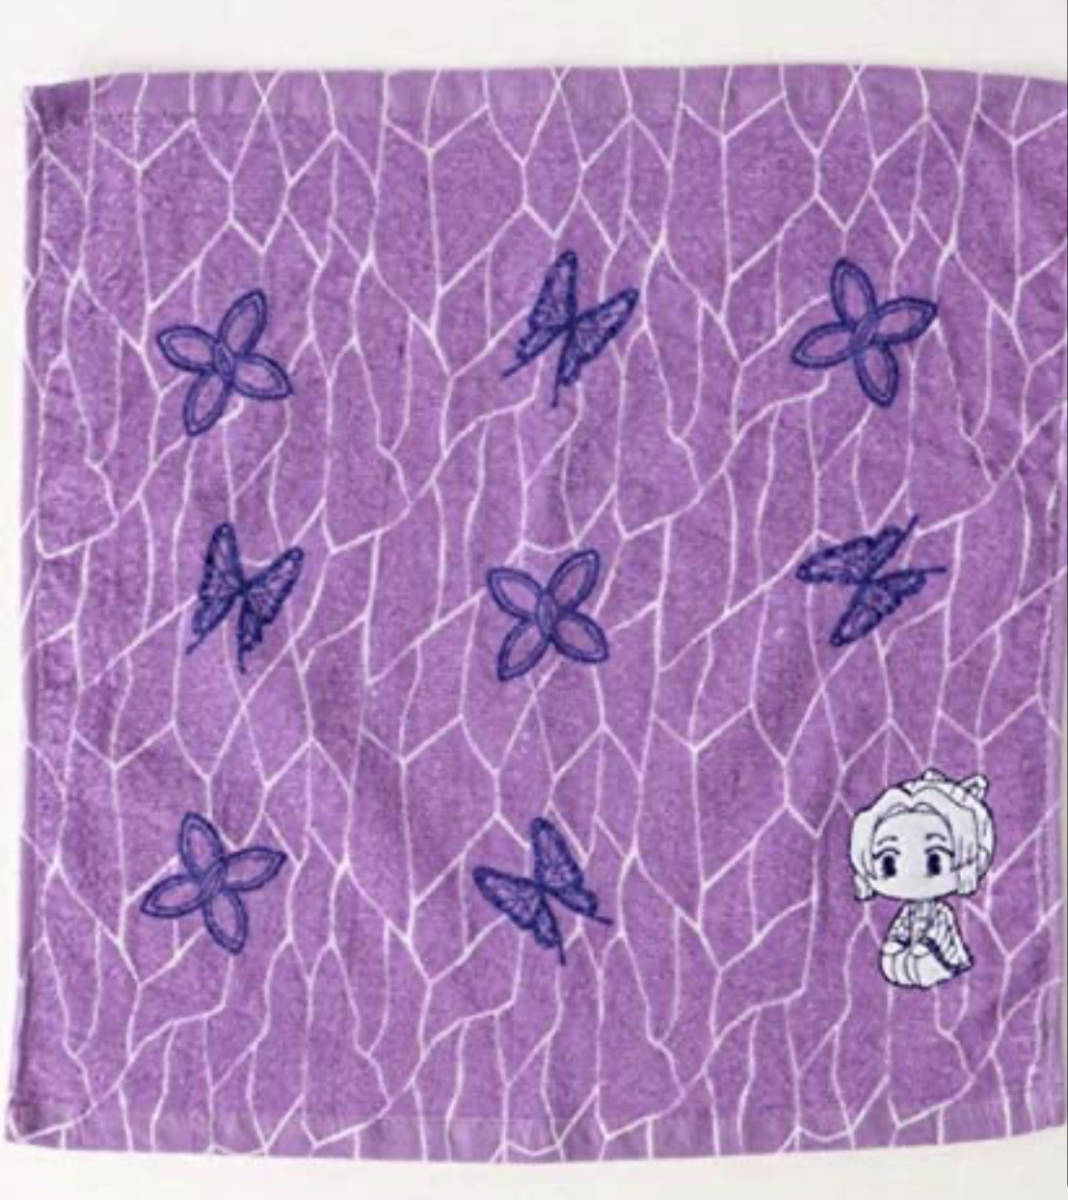 ##... blade ##. butterfly .. .. pillar hand towel purple color purple purple honey z35*34cm towel cotton 100% feather woven. pattern . guard on sword . butterfly honneys...... .. pretty 